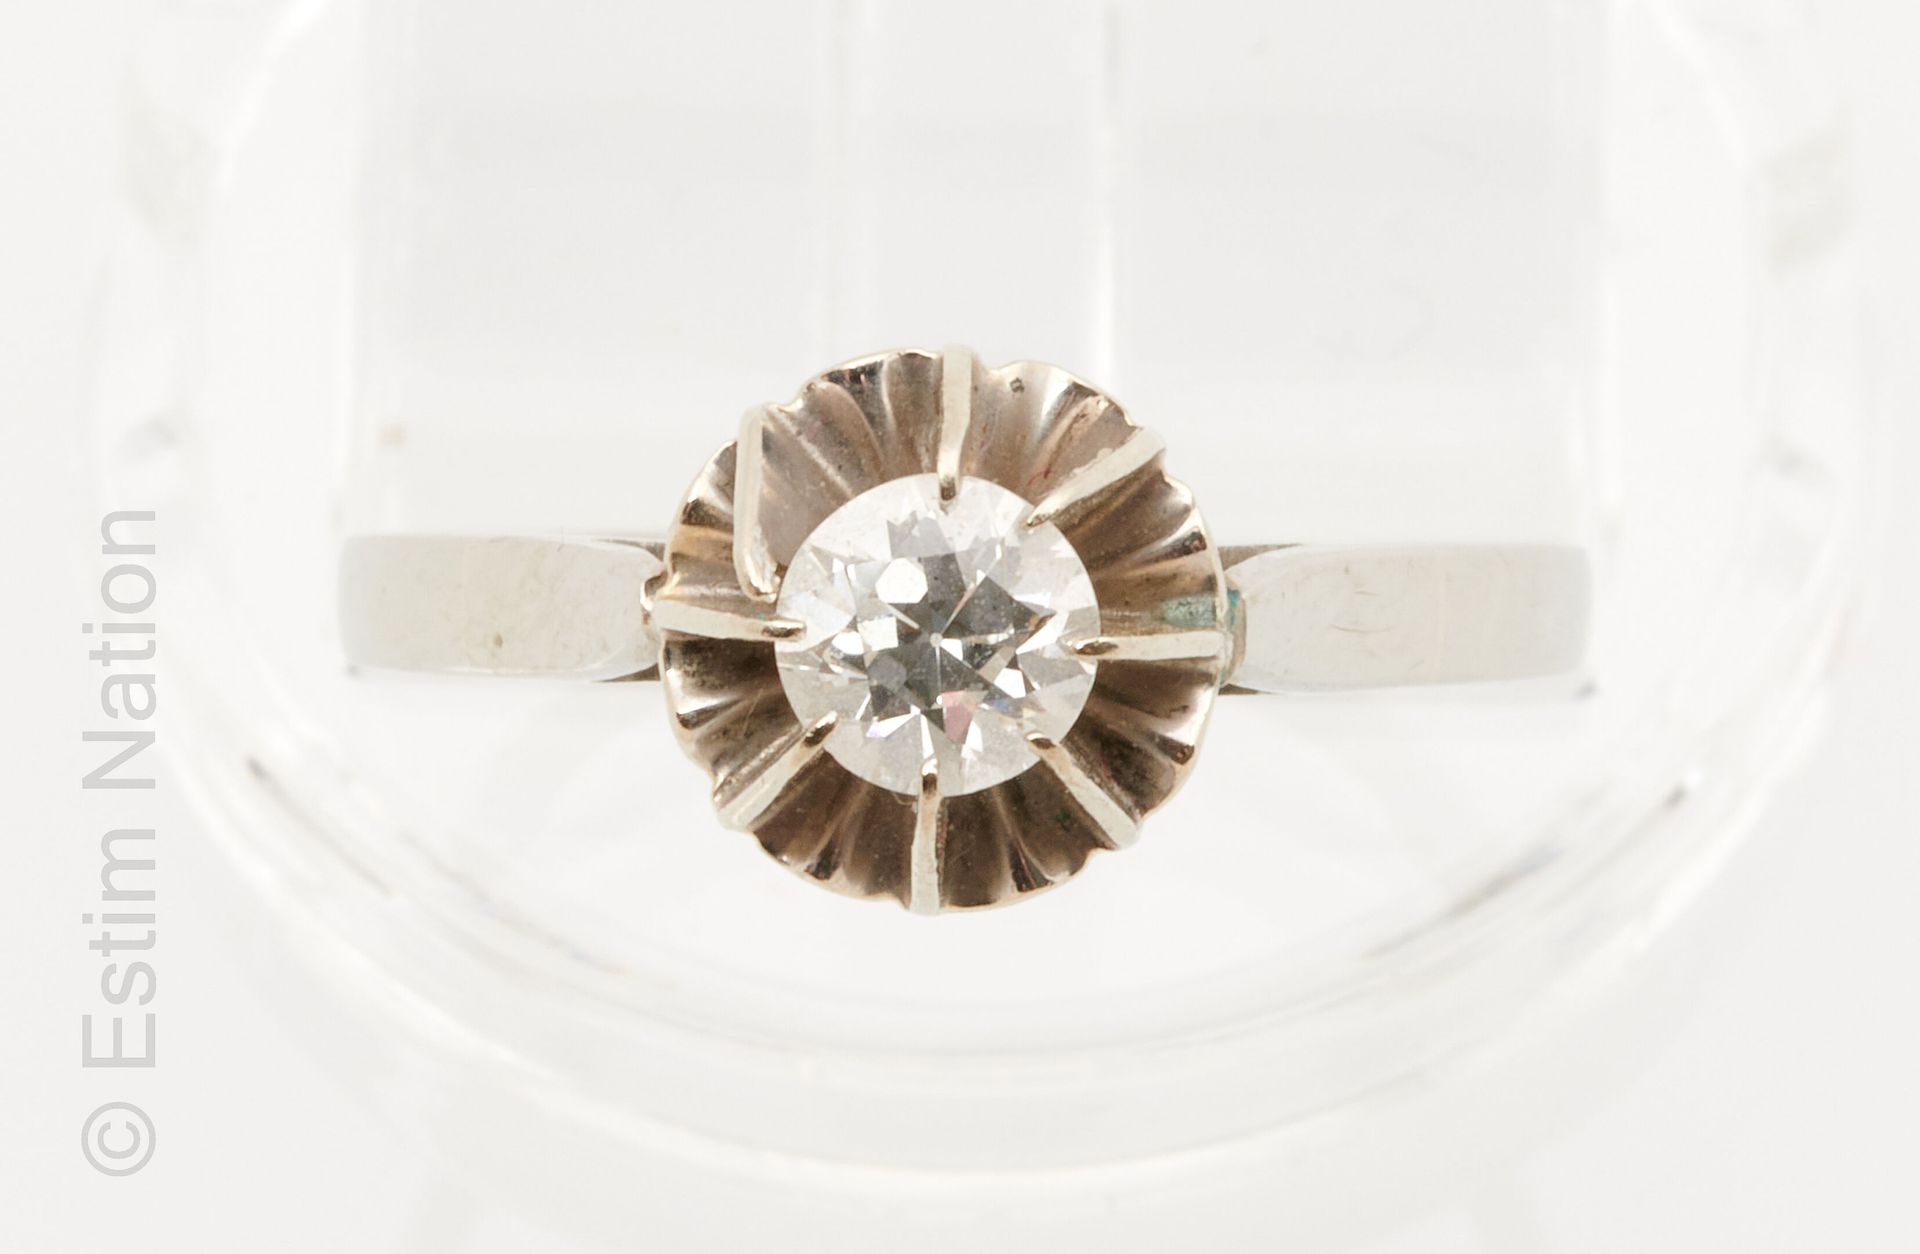 BAGUE SOLITAIRE OR GRIS 18K（750千分之一）白金单钻戒指，爪式镶嵌0.30克拉老式切割钻石。手指的周长：52。毛重：2.3克。